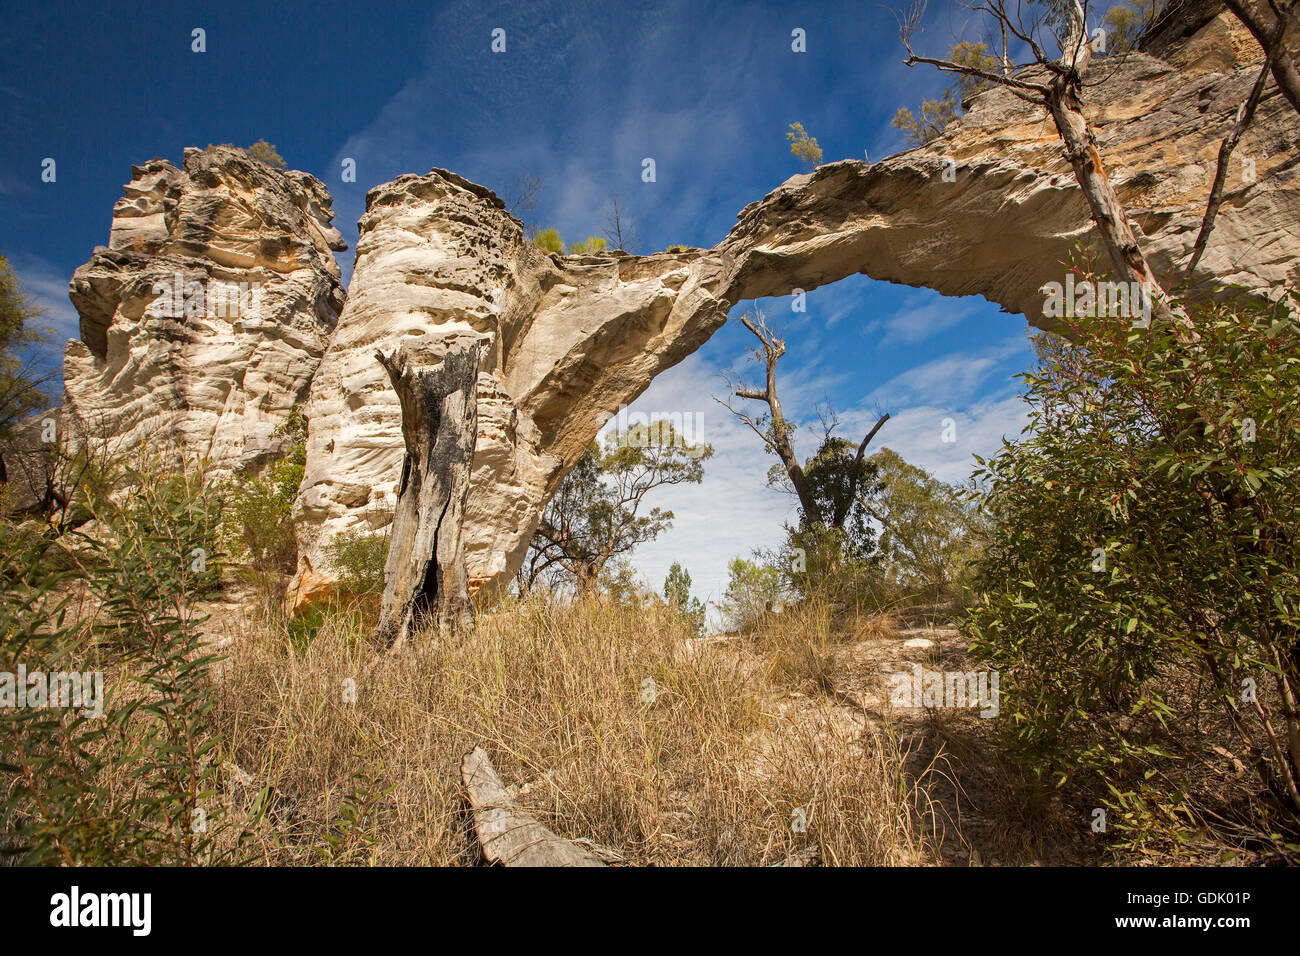 Grès naturel arch à Mount Moffatt / Carnarvon National Park in Australian Outback paysage de touffes d'herbe et des arbres dans le ciel bleu Banque D'Images